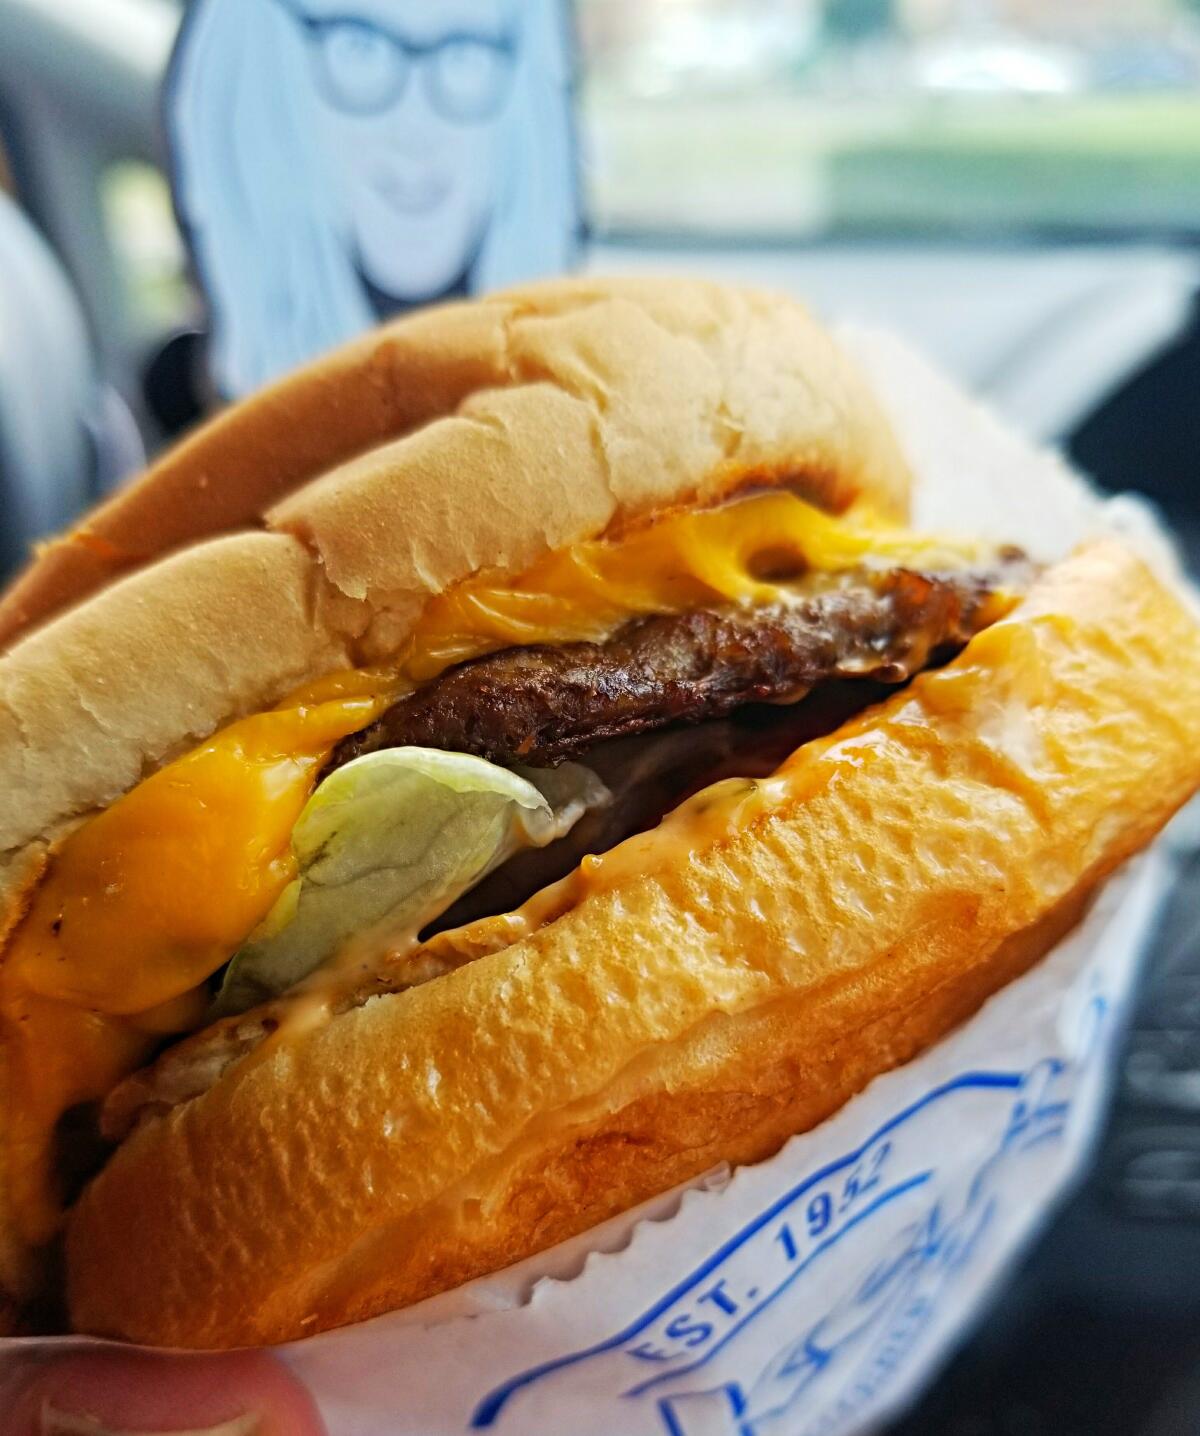 The Single Baker cheeseburger at Baker's Drive-Thru. 